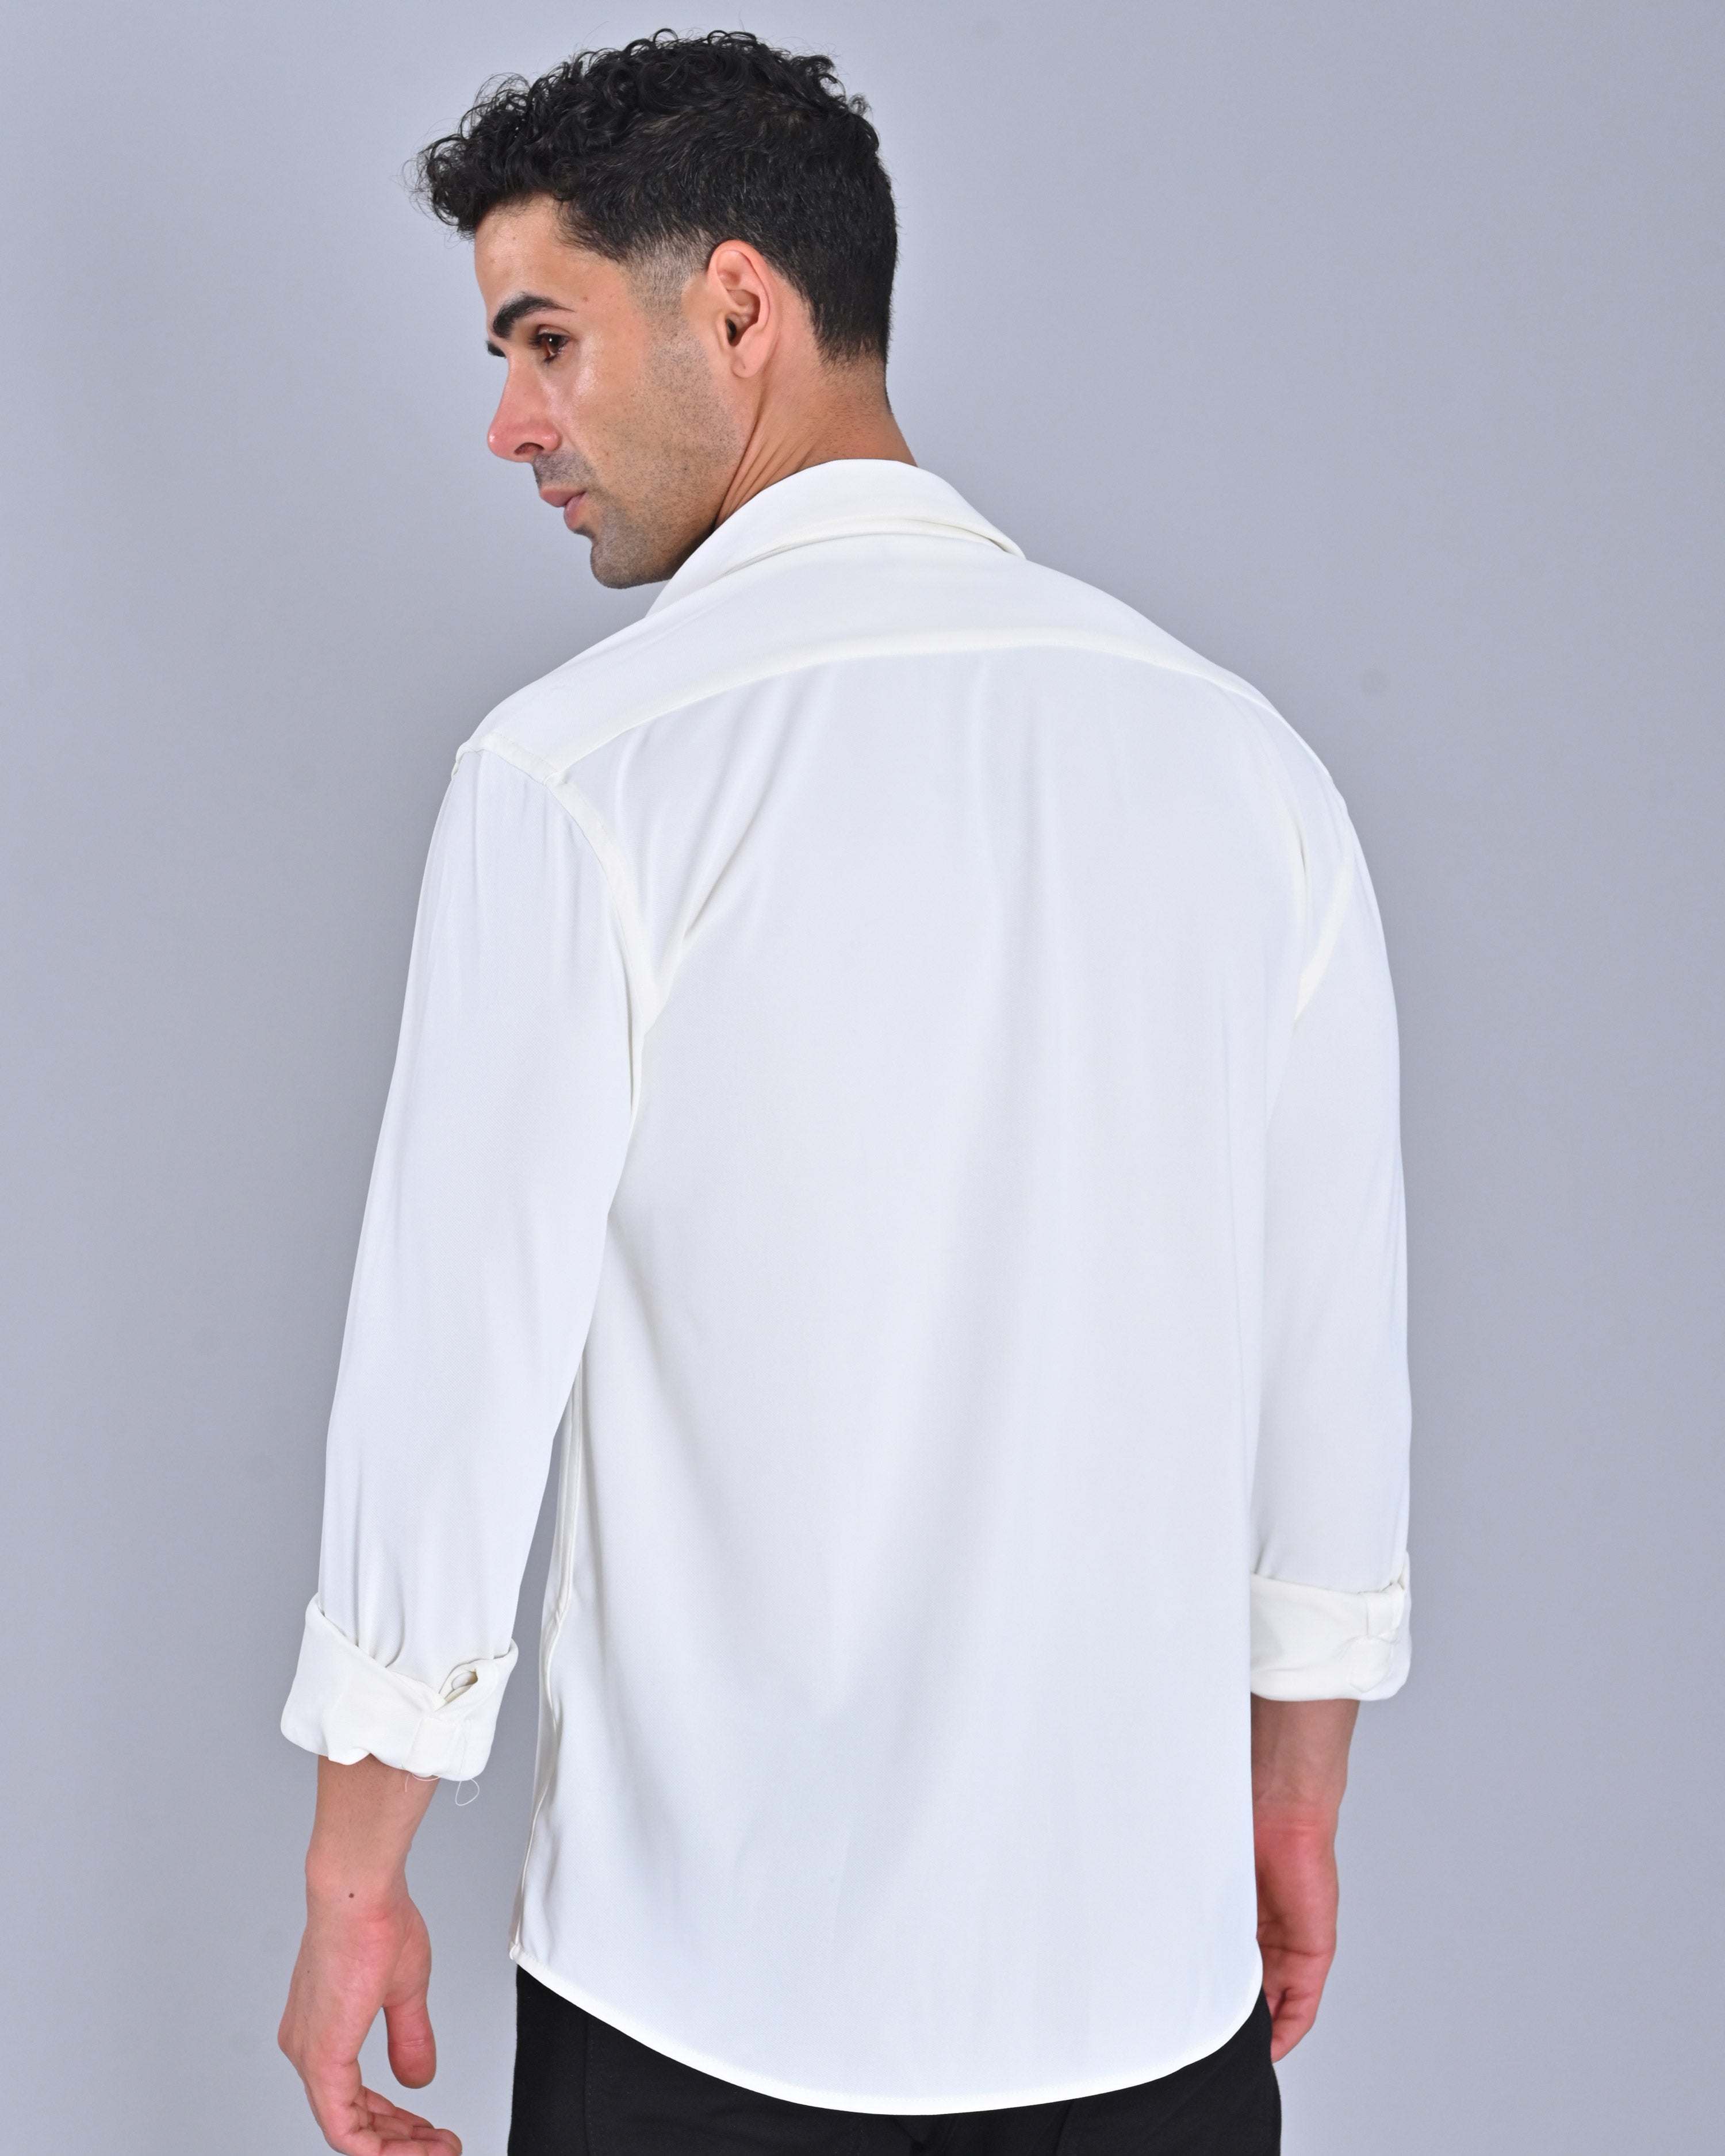 Men's Solid White Cross Knit Shirt Online